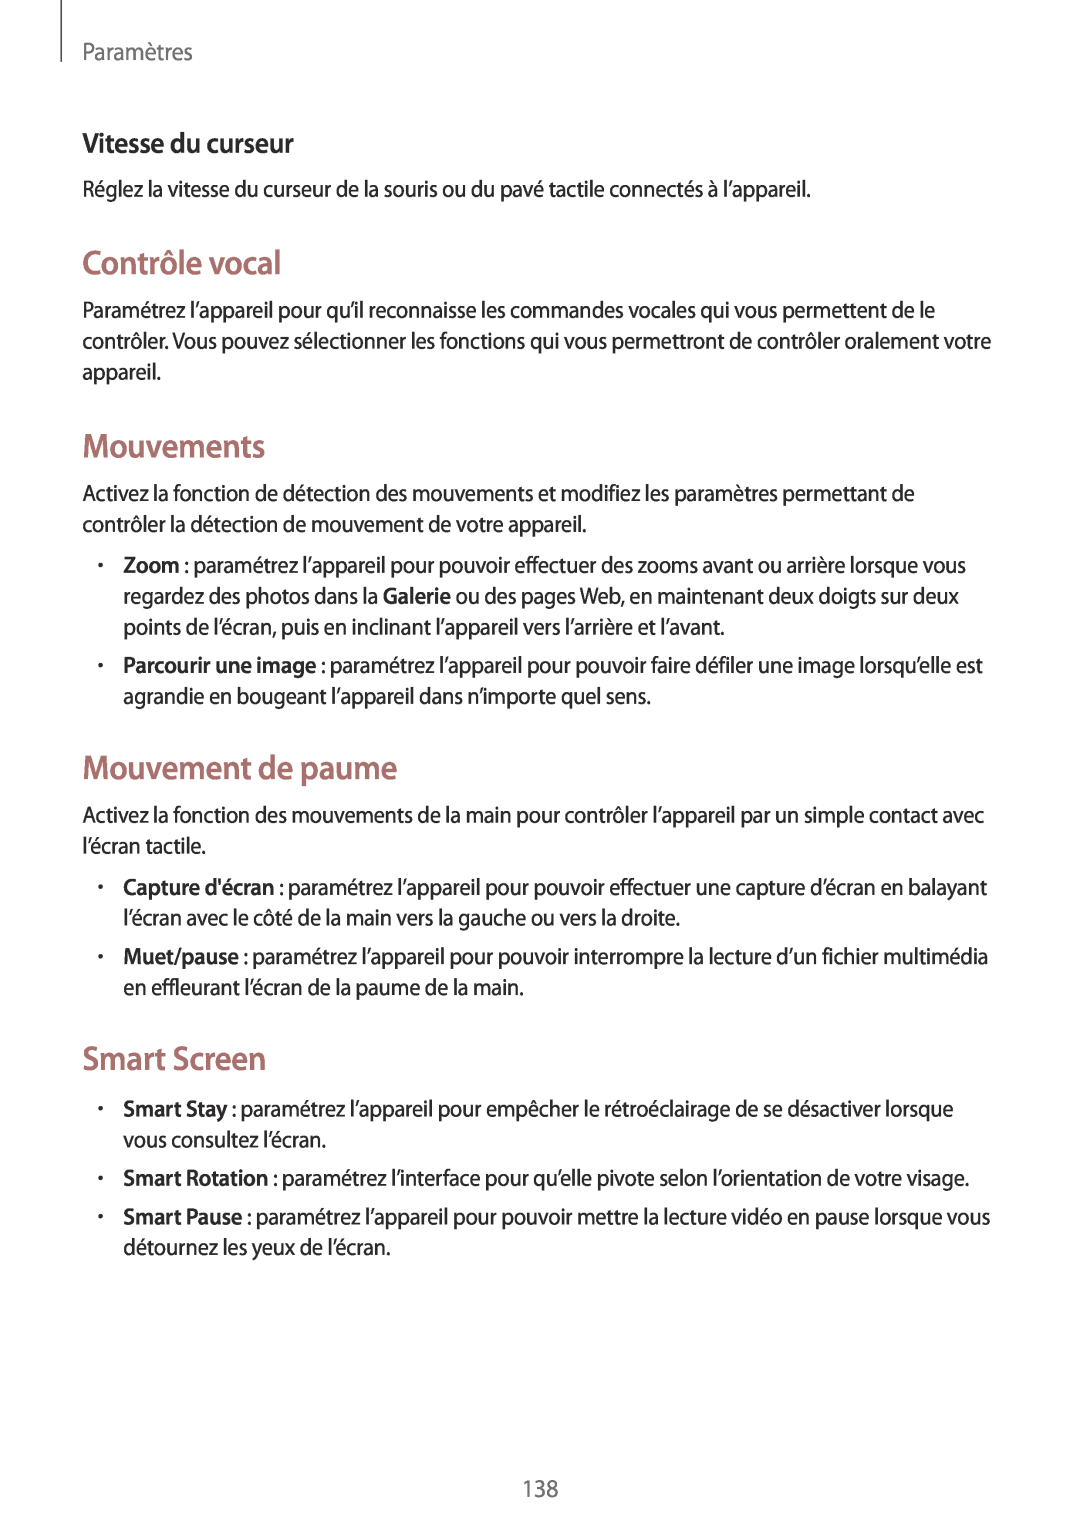 Samsung SM-T320NZKAXEF manual Contrôle vocal, Mouvement de paume, Smart Screen, Vitesse du curseur, Mouvements, Paramètres 